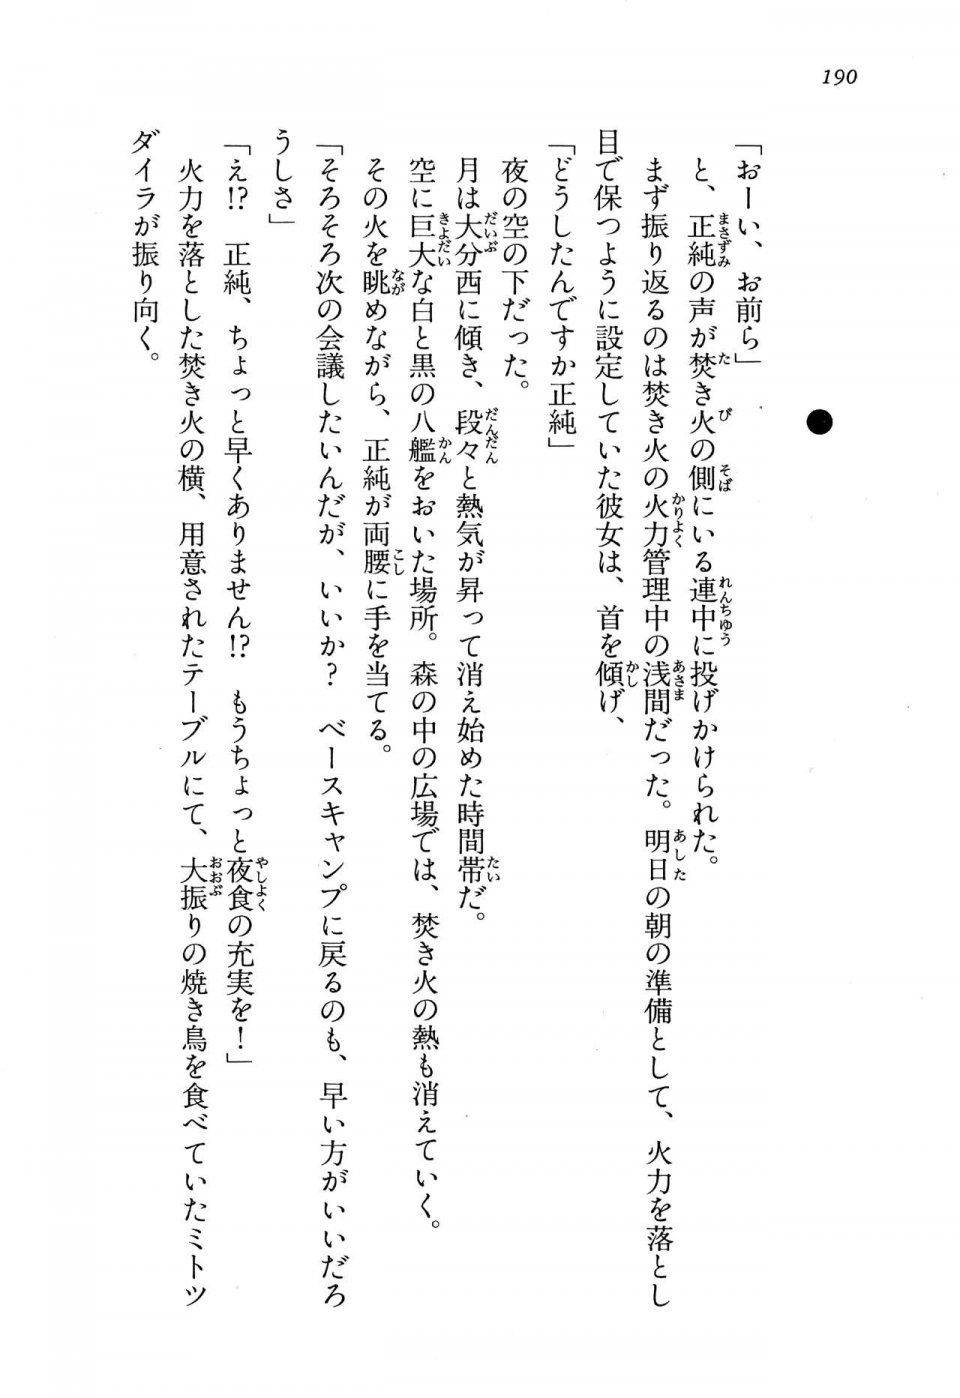 Kyoukai Senjou no Horizon LN Vol 13(6A) - Photo #190